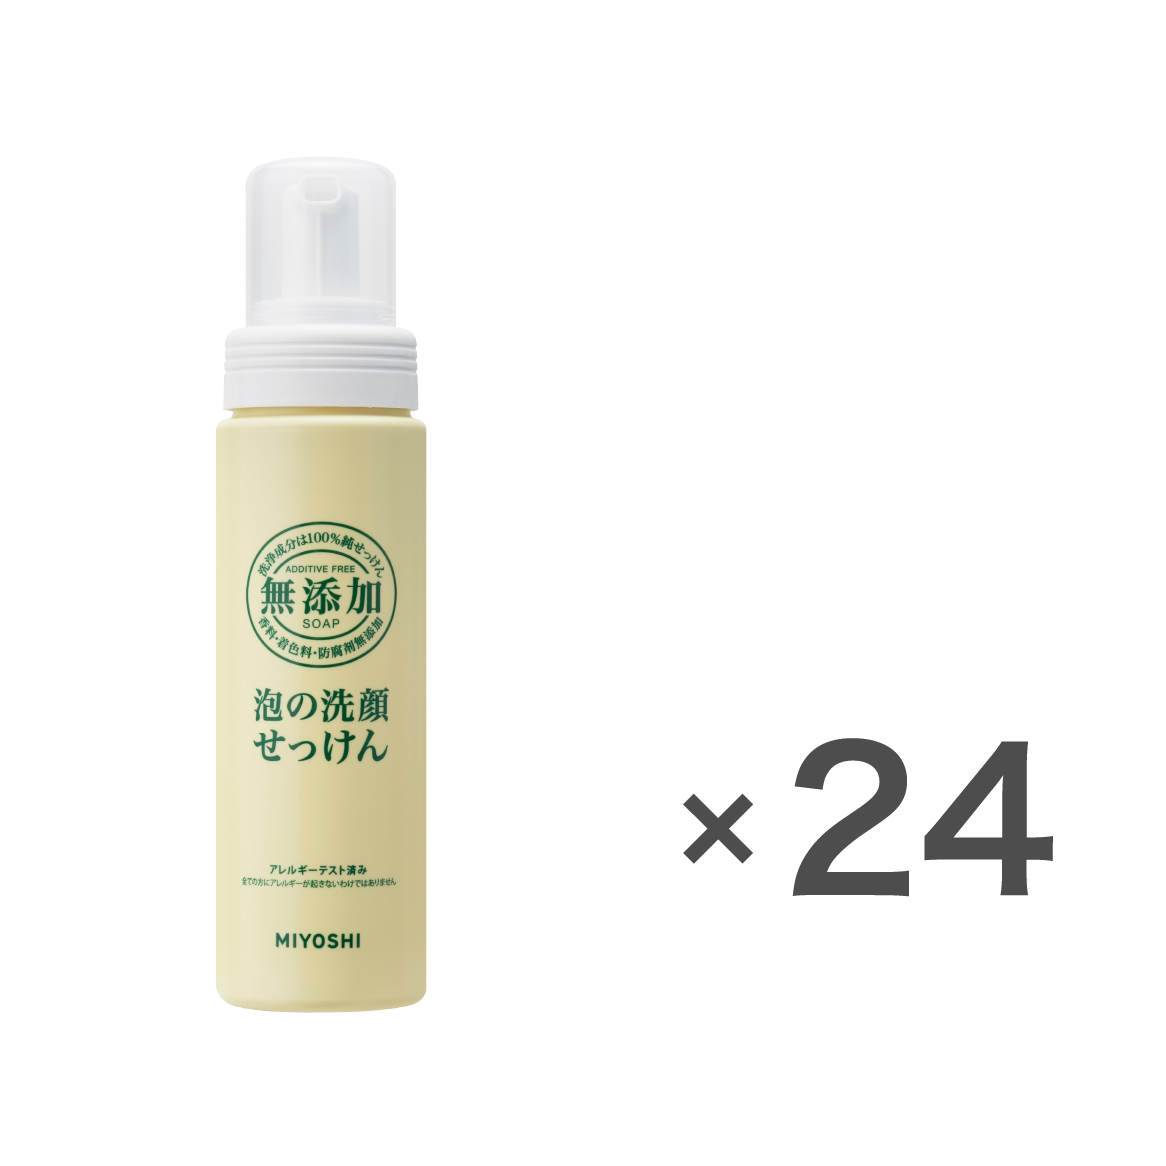 無添加泡の洗顔せっけん200mlケース(24個入) – MIYOSHI SOAP CORPORATION